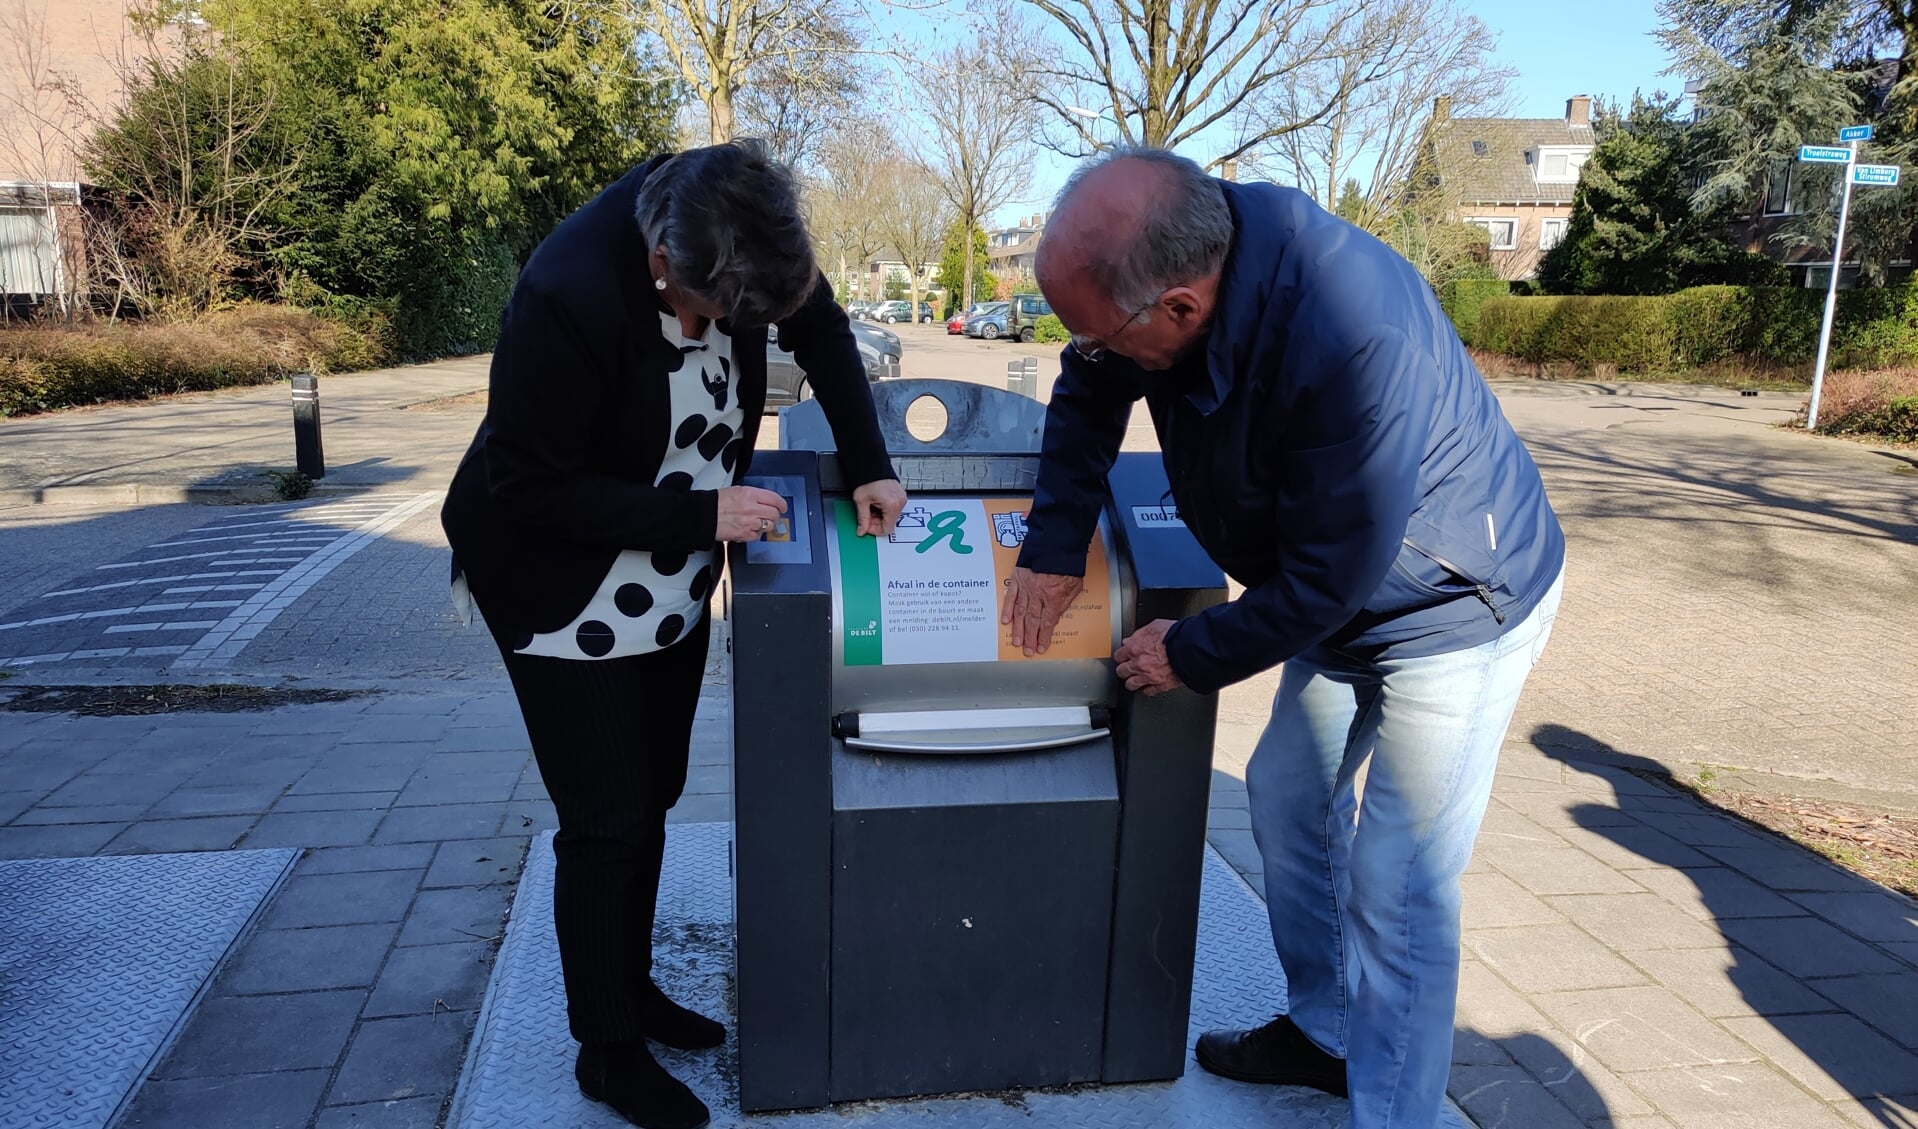 De eerste sticker werd donderdag 17 maart door de wethouder en een vertegenwoordiger van de wijkvereniging op de container op de hoek Akker/Troelstraweg in De Bilt geplakt.